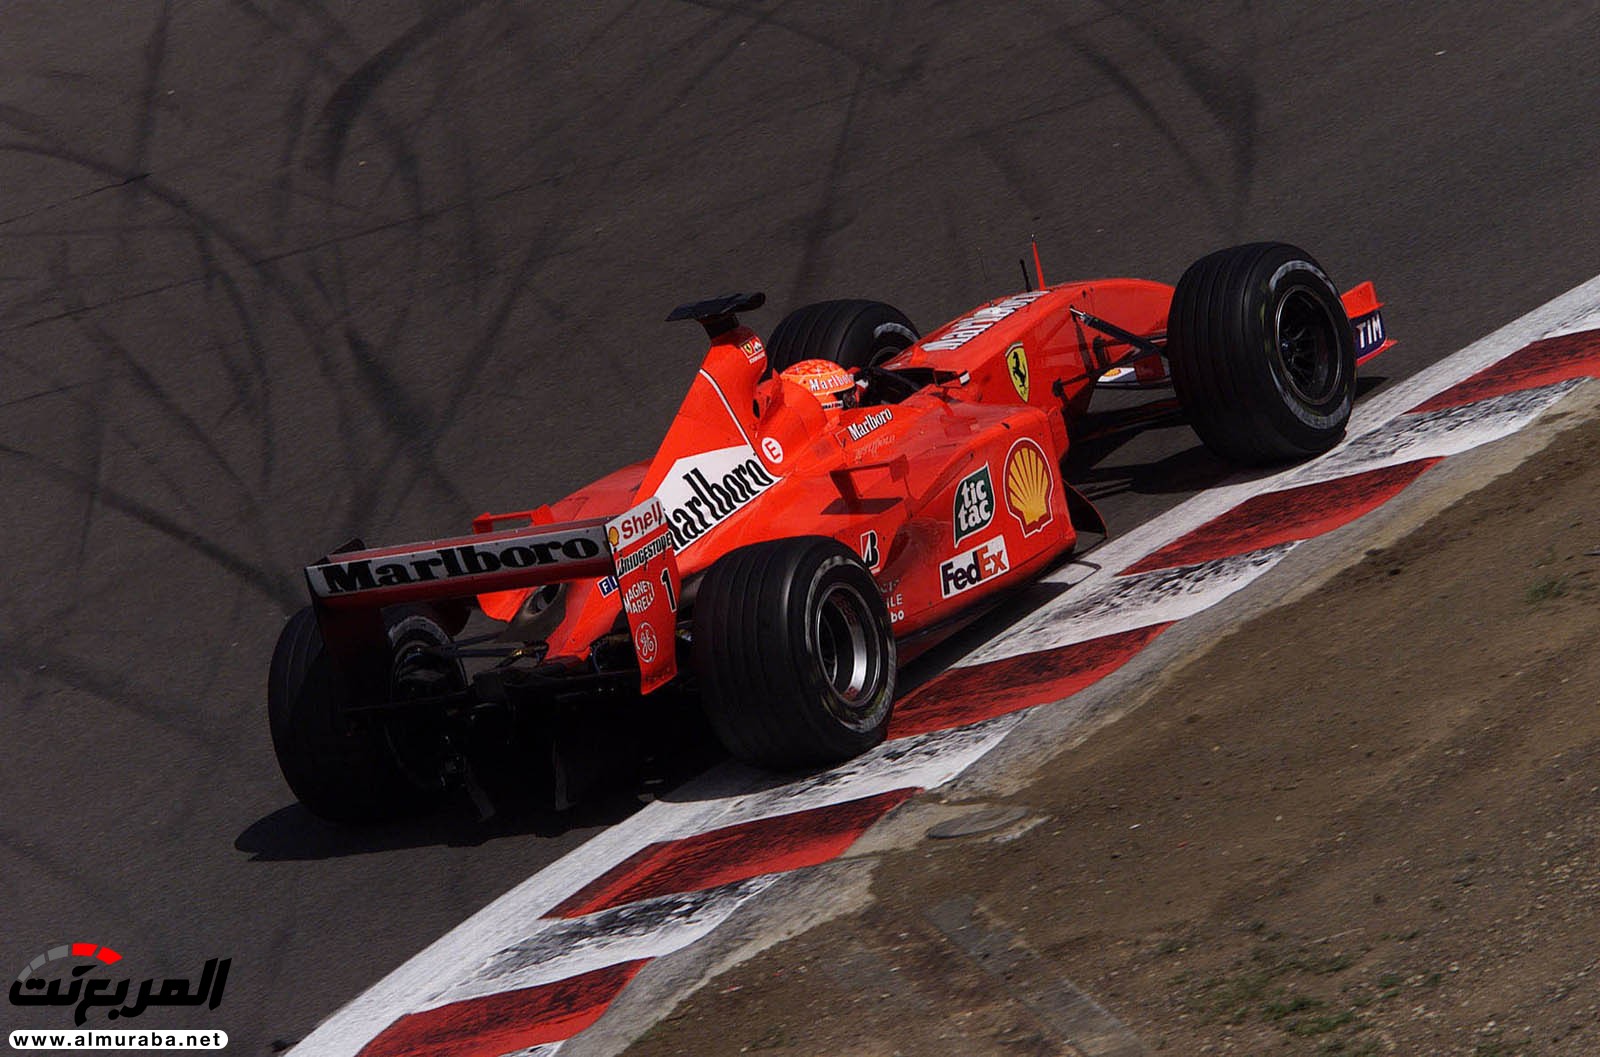 أسطورة فورمولا 1 مايكل شوماخر تباع فيراري F2001 خاصته مقابل 28 مليون ريال 17